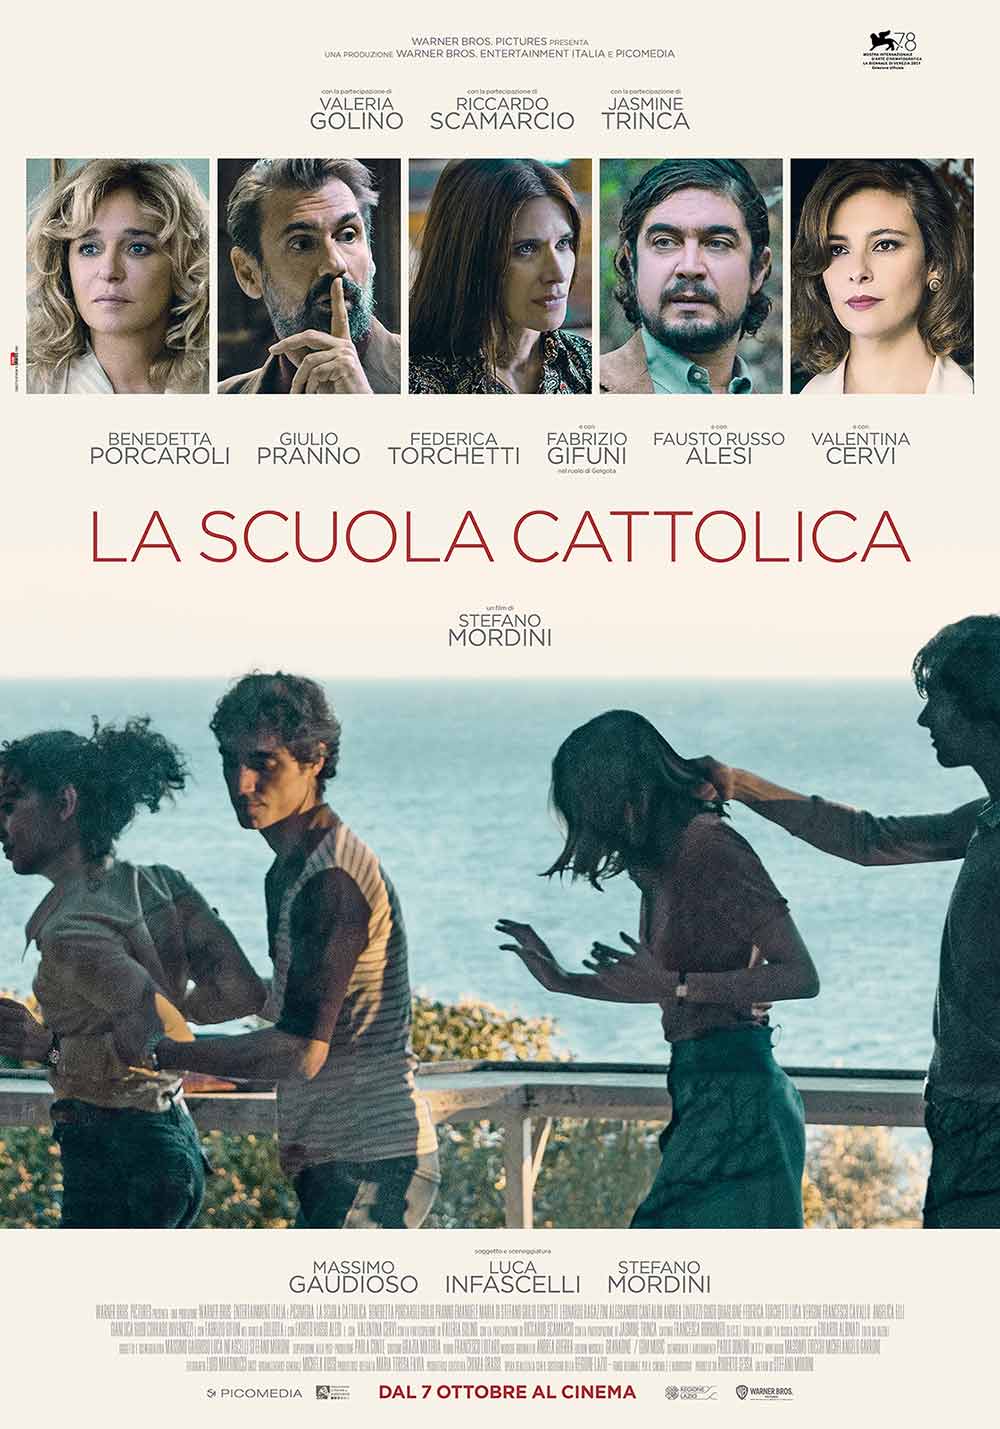  Dall'articolo: La scuola cattolica, il poster ufficiale del film.